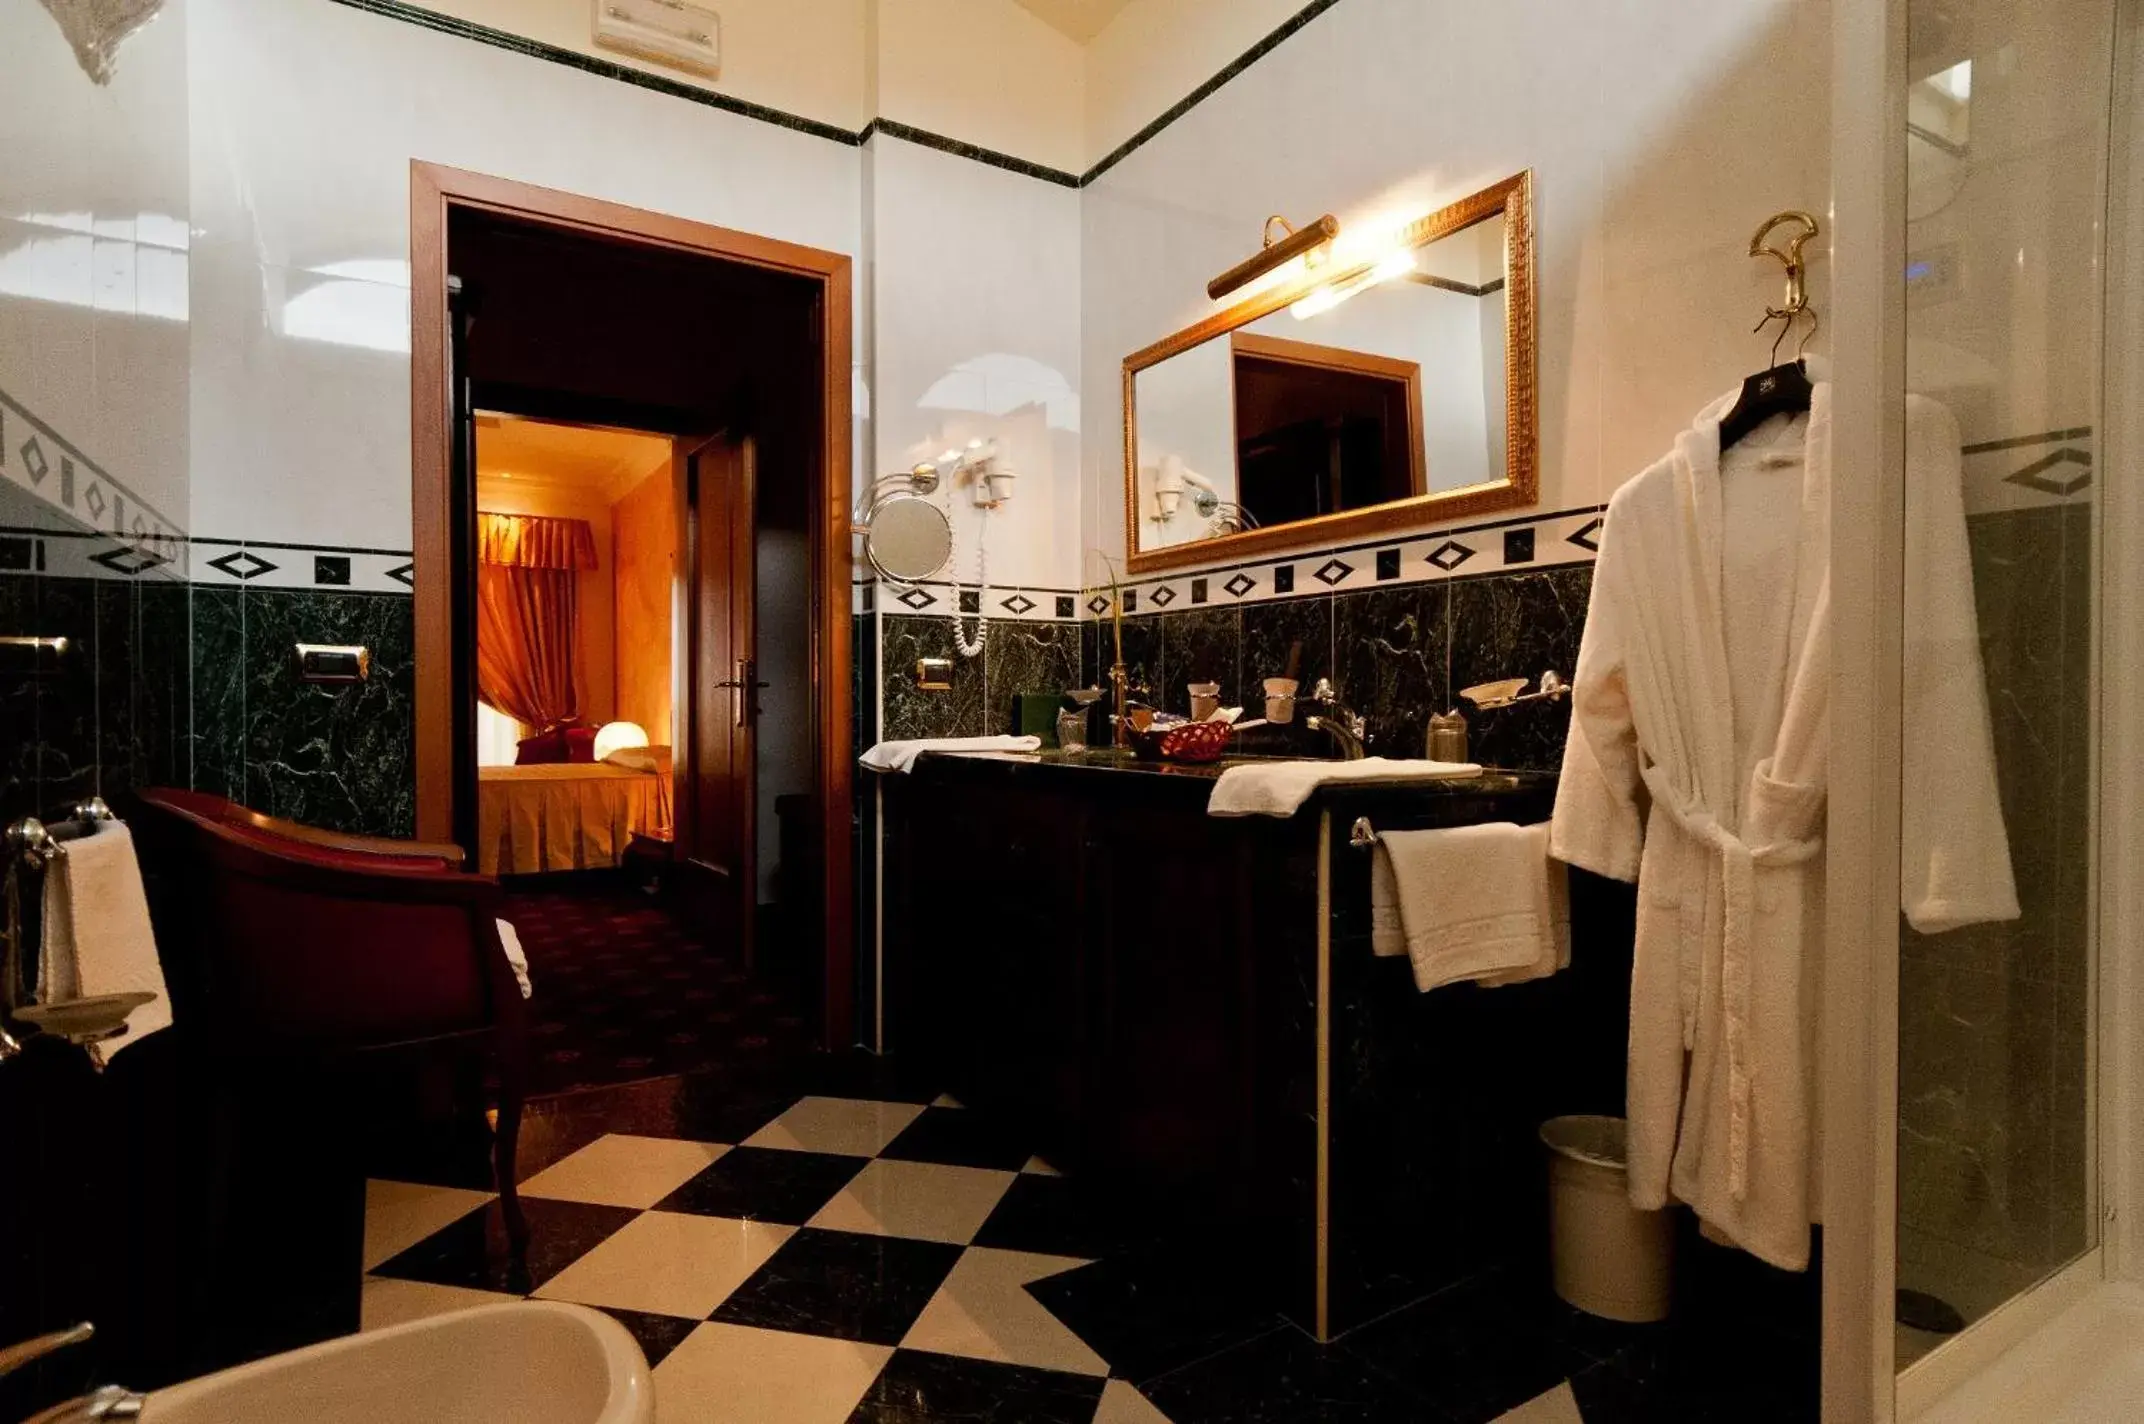 Bathroom in Parco dei Principi Hotel